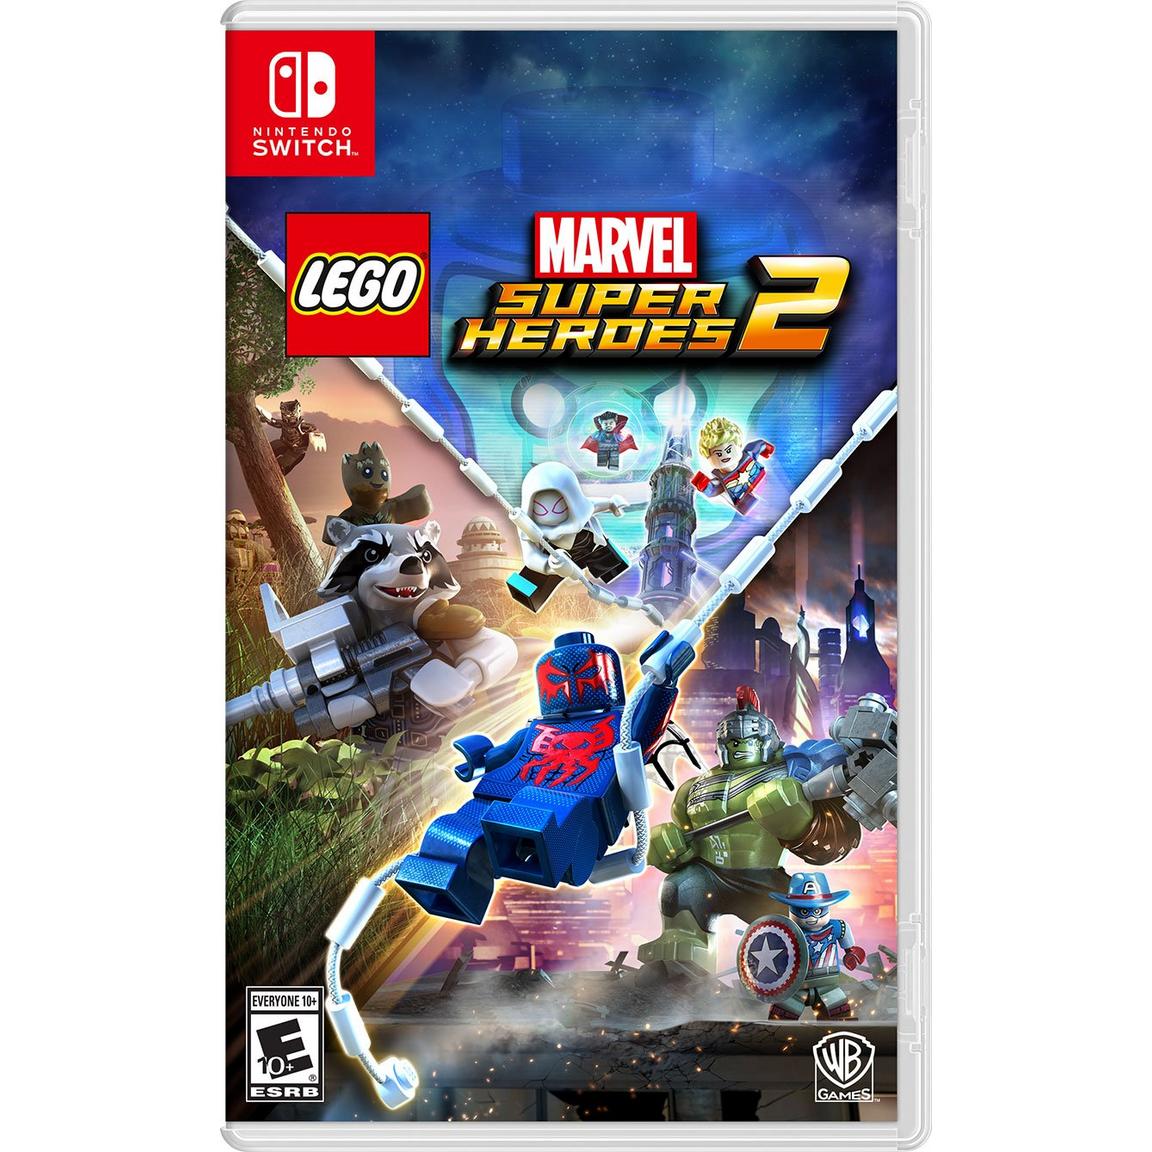 Видеоигра LEGO Marvel Super Heroes 2 - Nintendo Switch набор lego marvel super heroes 2 [ps4 русские субтитры] оружие игровое нож кунай 2 холодное пламя деревянный